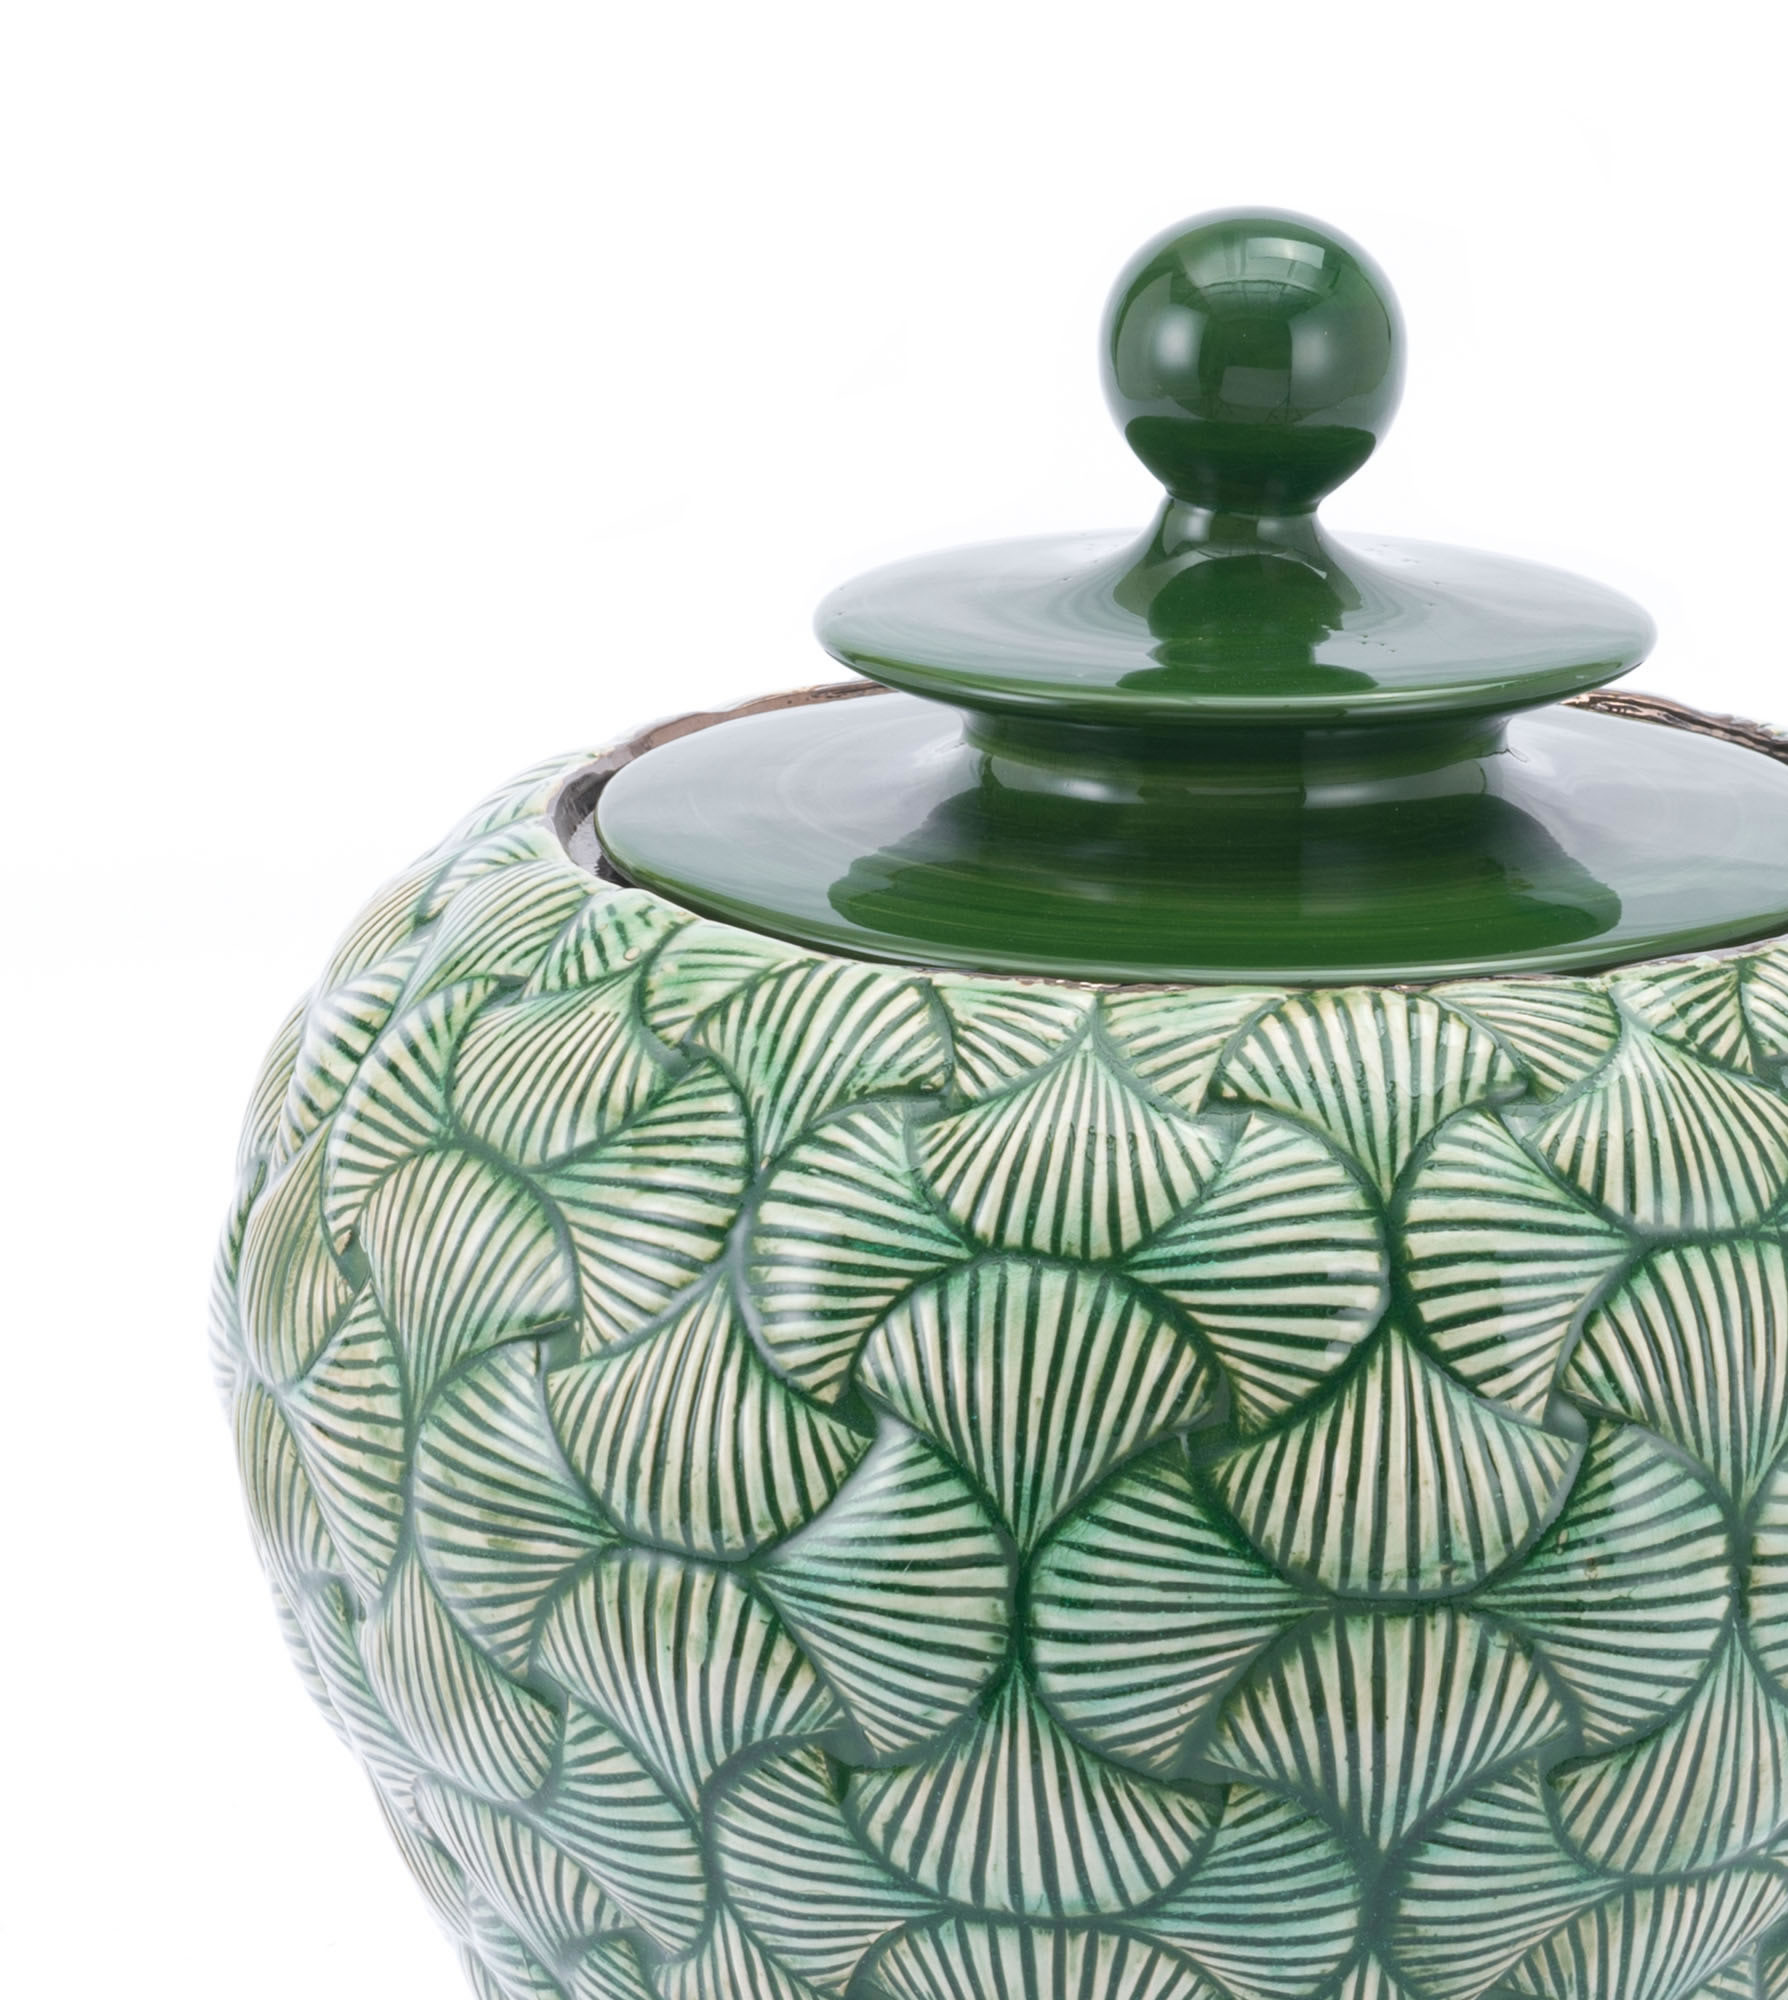 16.7" x 16.7" x 20.5" Green, Ceramic, Small Temple Jar